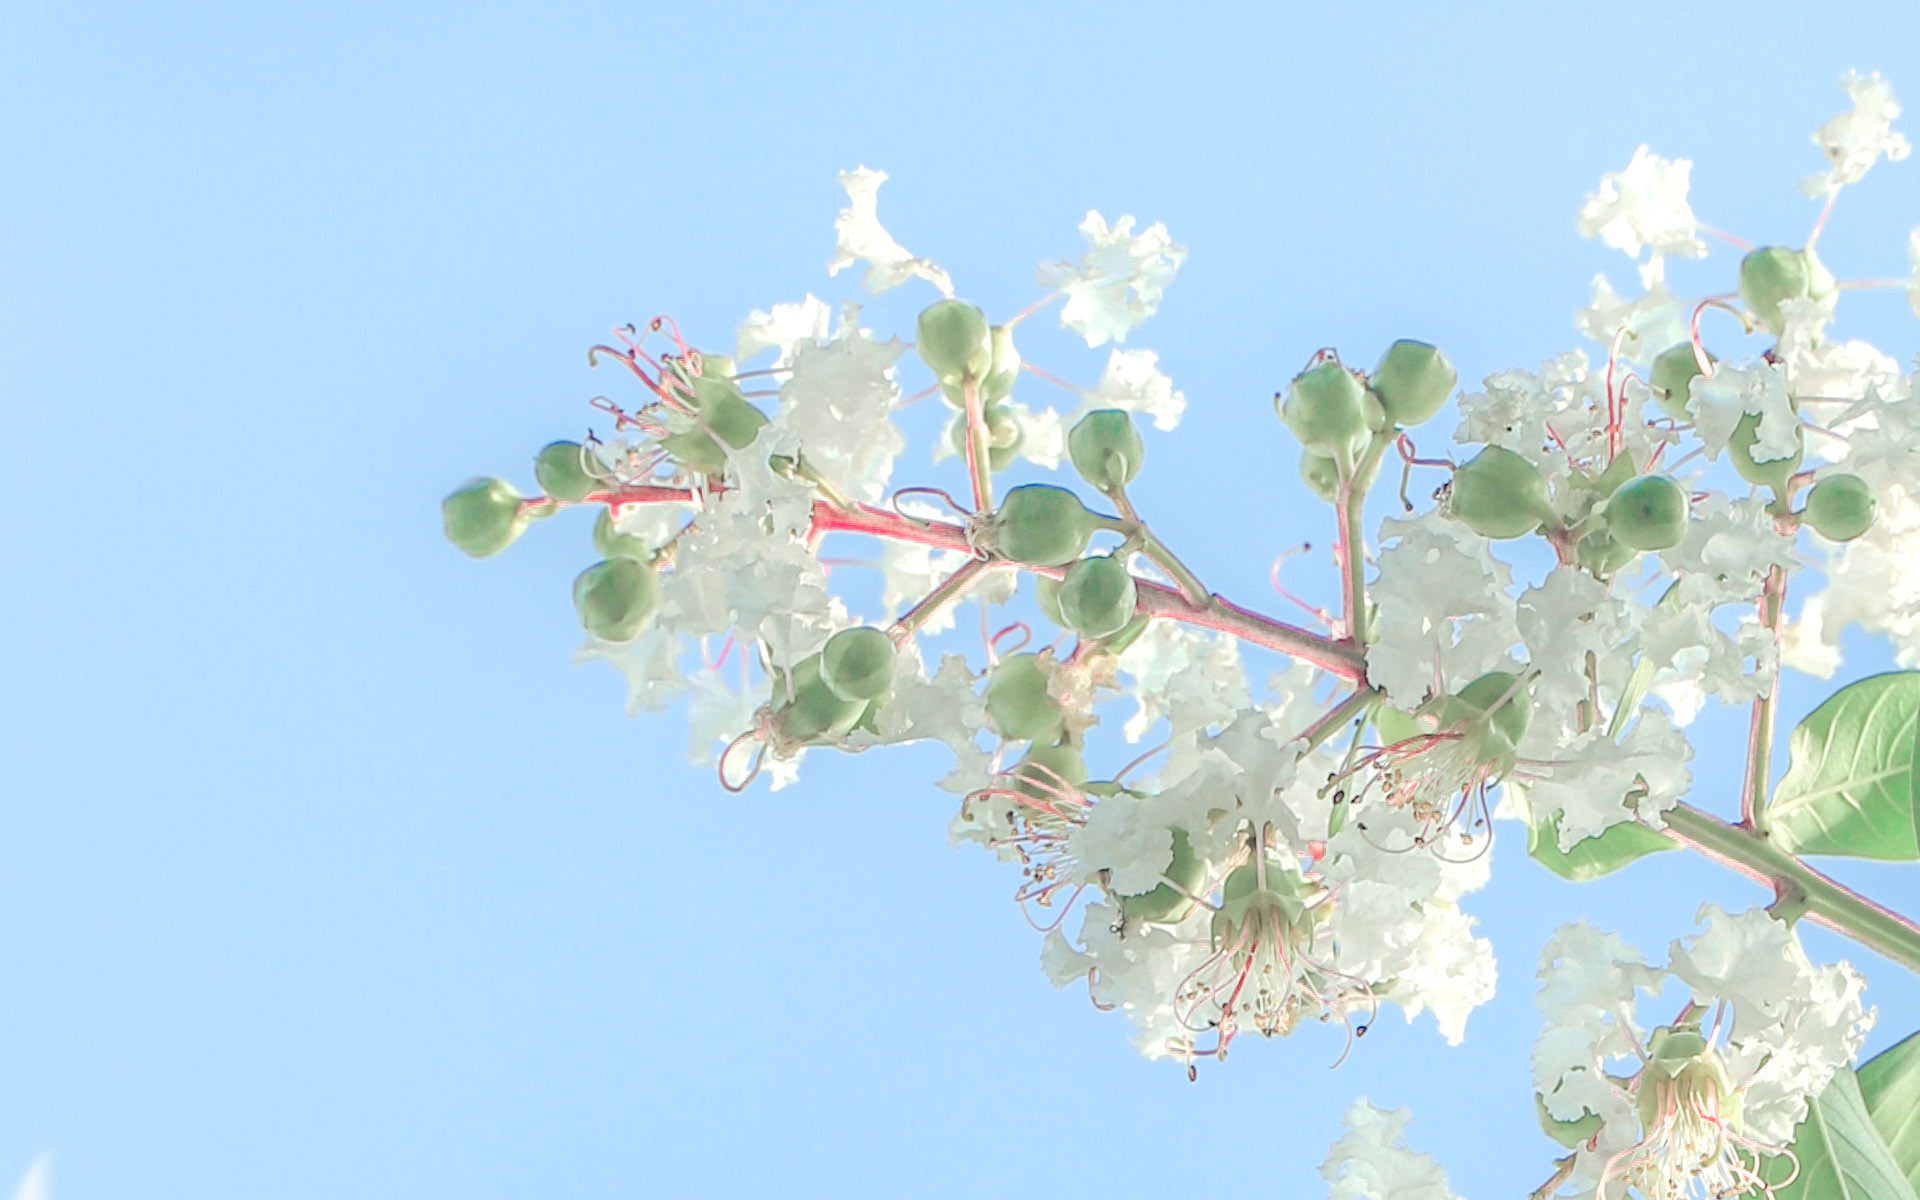 蔚蓝的天空，小清新植物，<span style='color:red;'>花朵</span>，叶子唯美仰望视觉意境美图